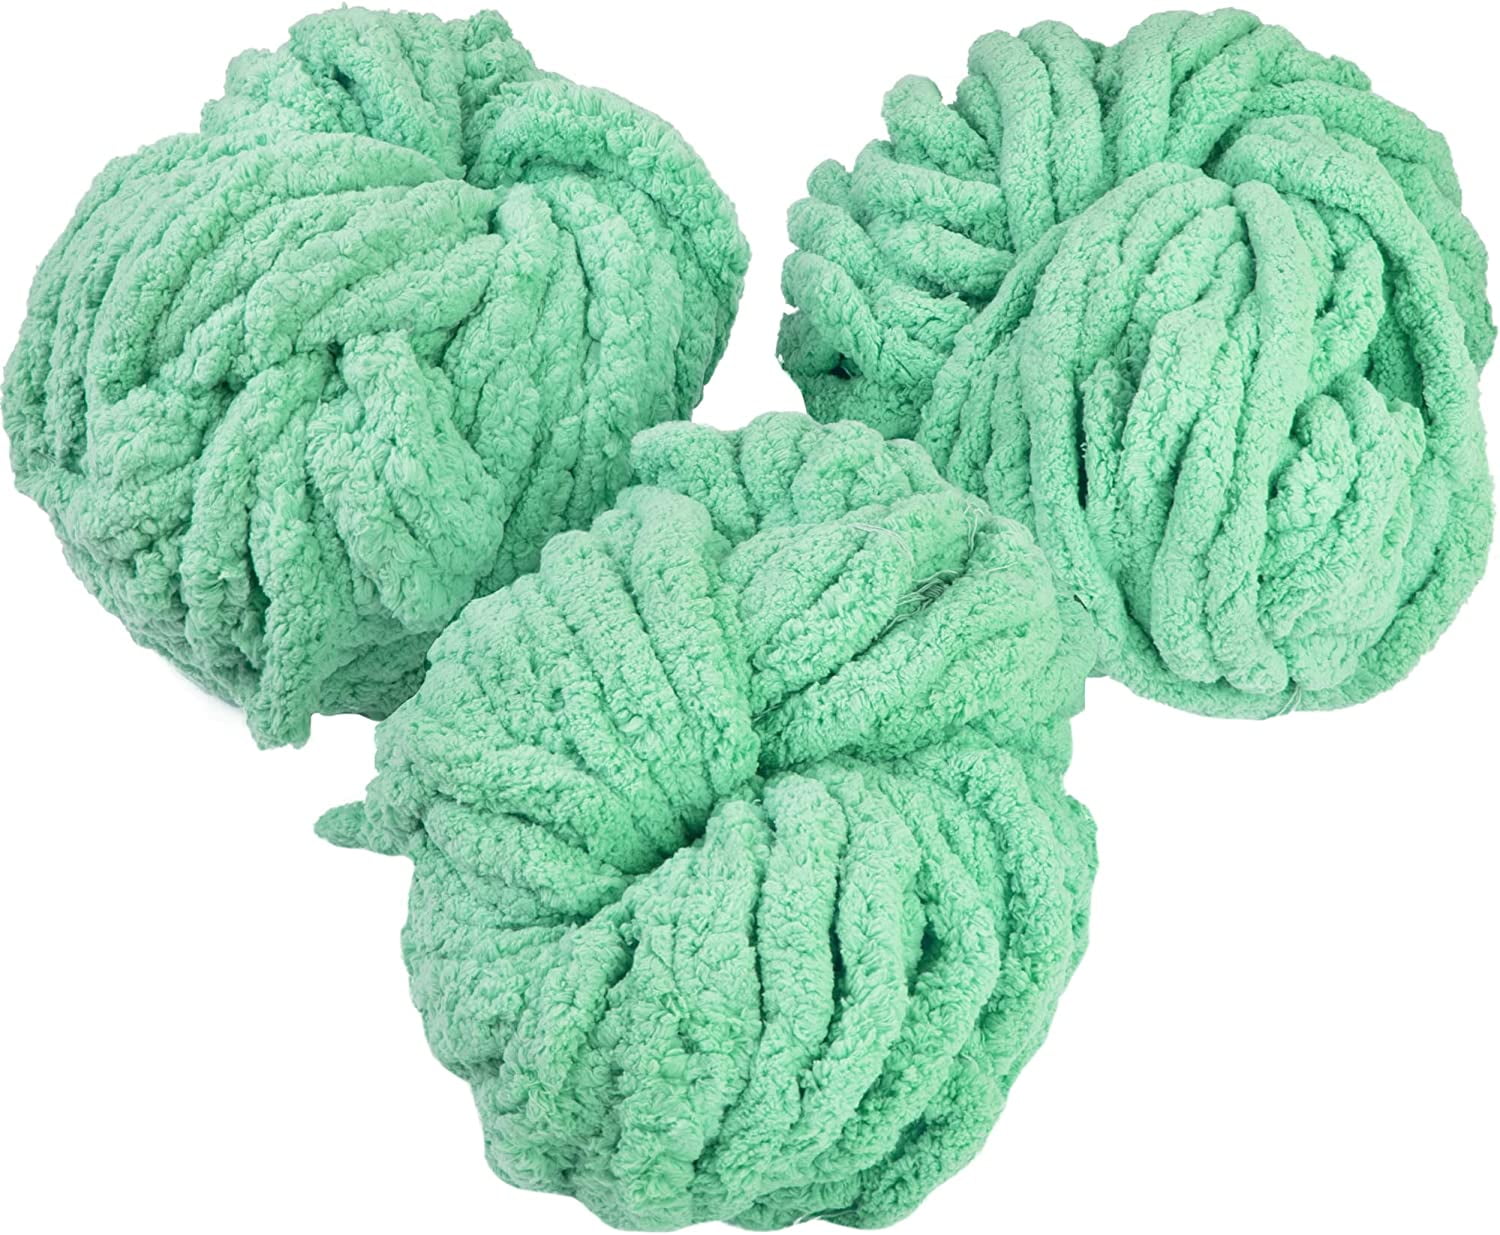 iDIY Chunky Vegan Wool Yarn 3 Pack (37 Yards Each Skein) - Dark Grey -  Fluffy Yarn Perfect for Soft Throw and Baby Blankets, Arm Knitting,  Crocheting